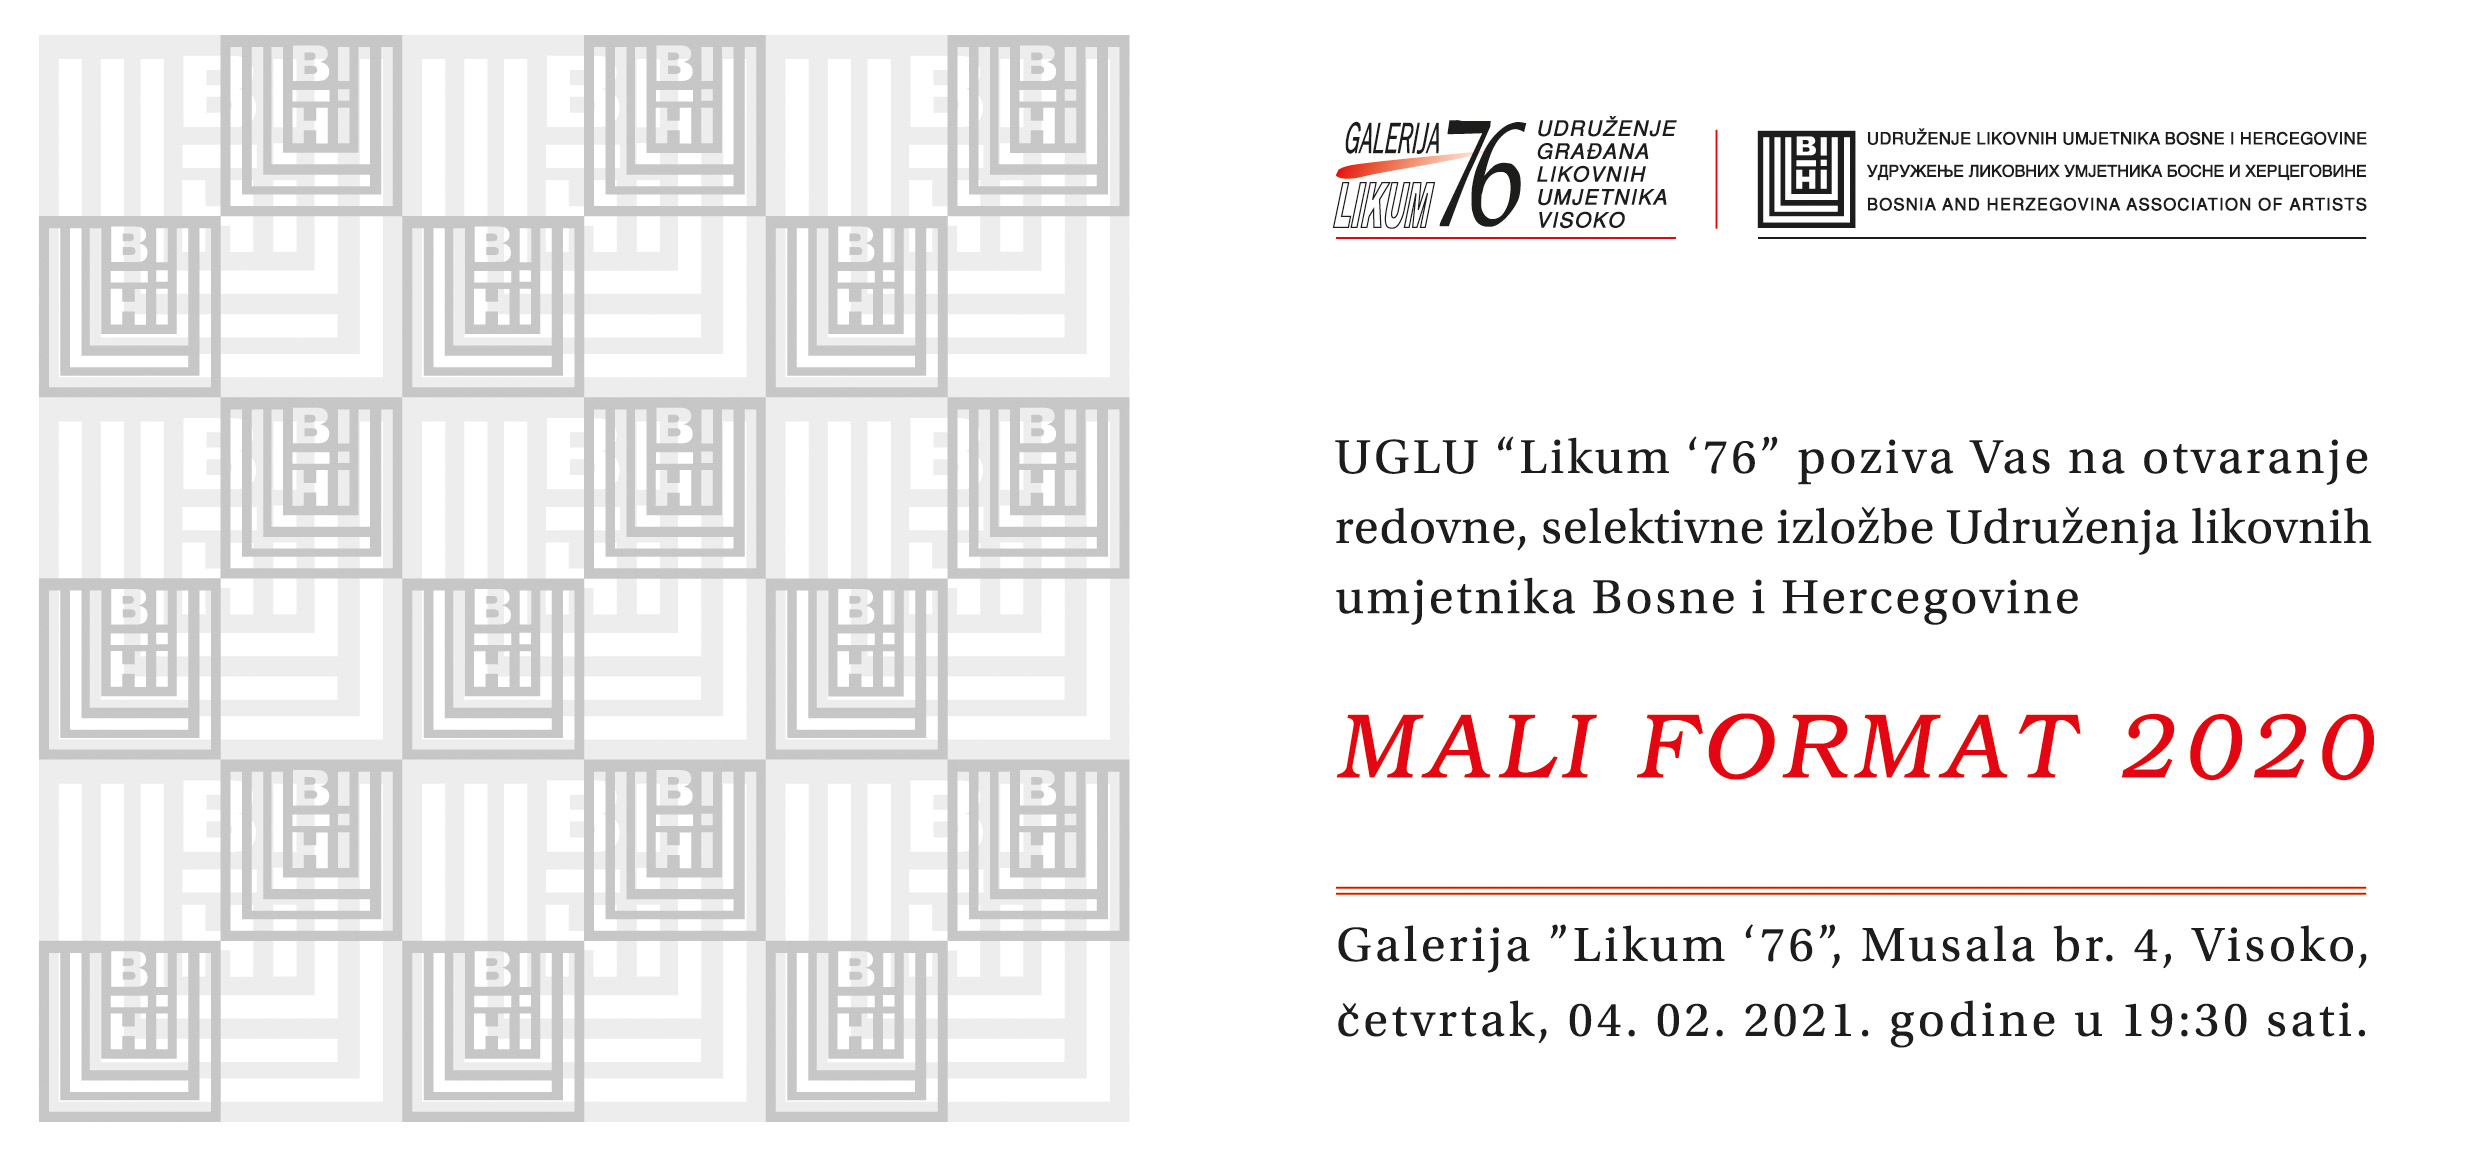 U četvrtak otvorenje izložbe “Mali format” u Galeriji “Likum 76”